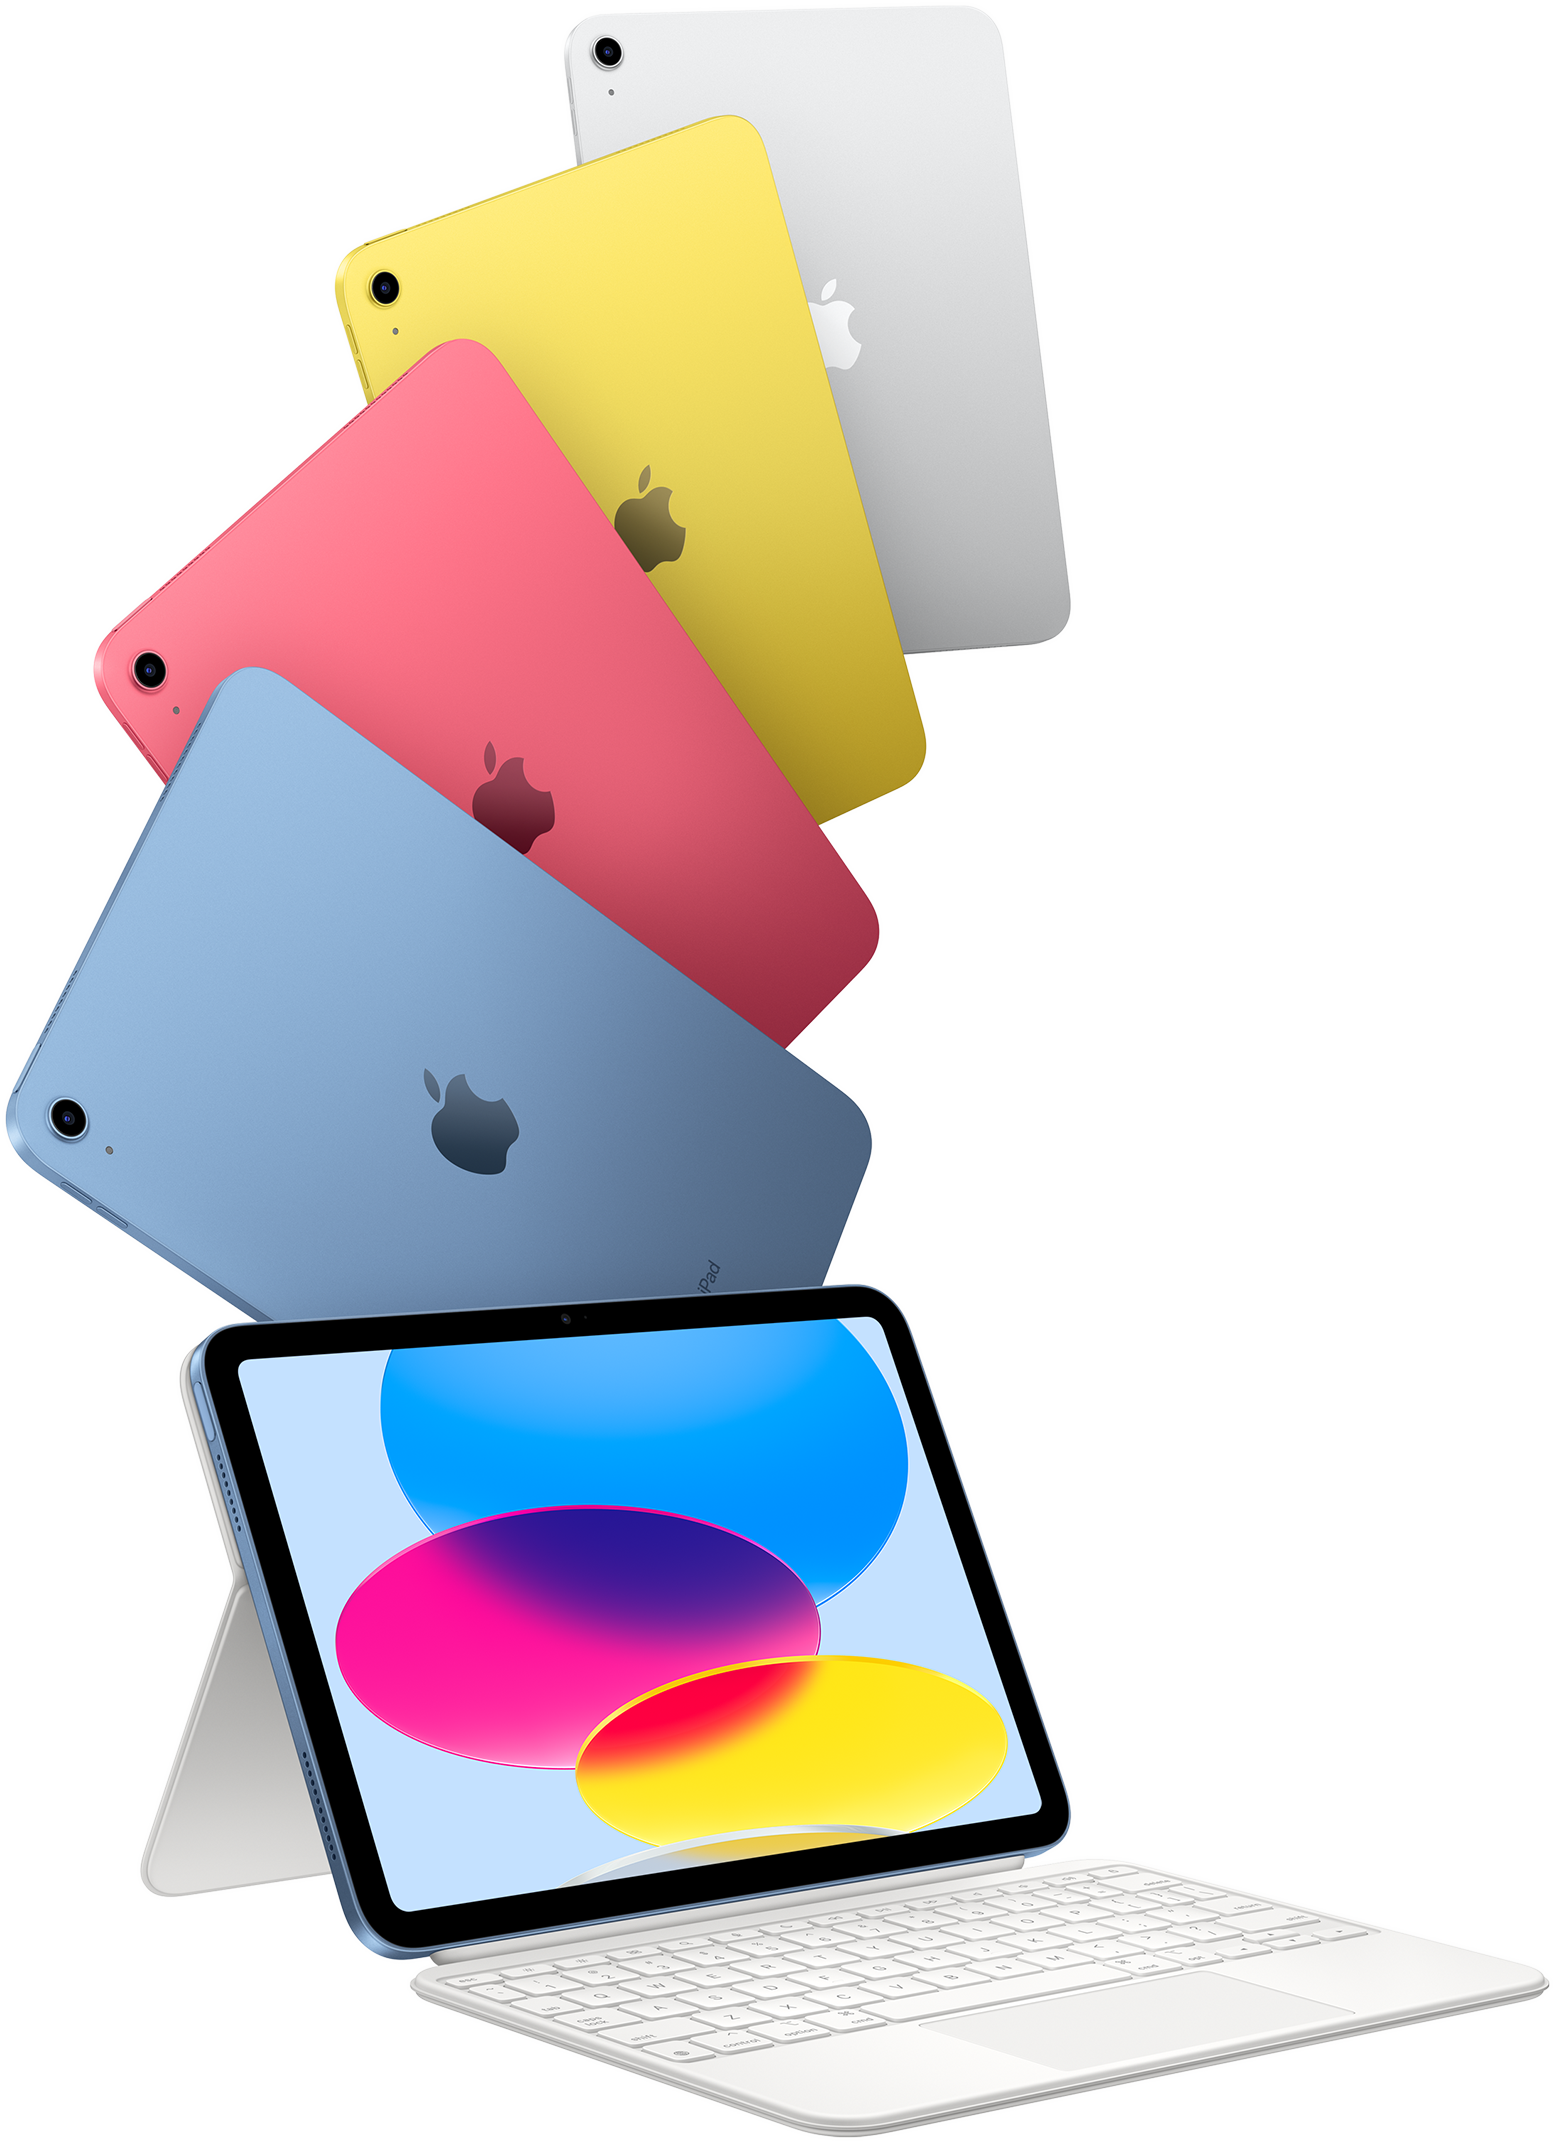 iPad nei colori blu, rosa, giallo e argento, e un iPad collegato alla Magic Keyboard Folio.